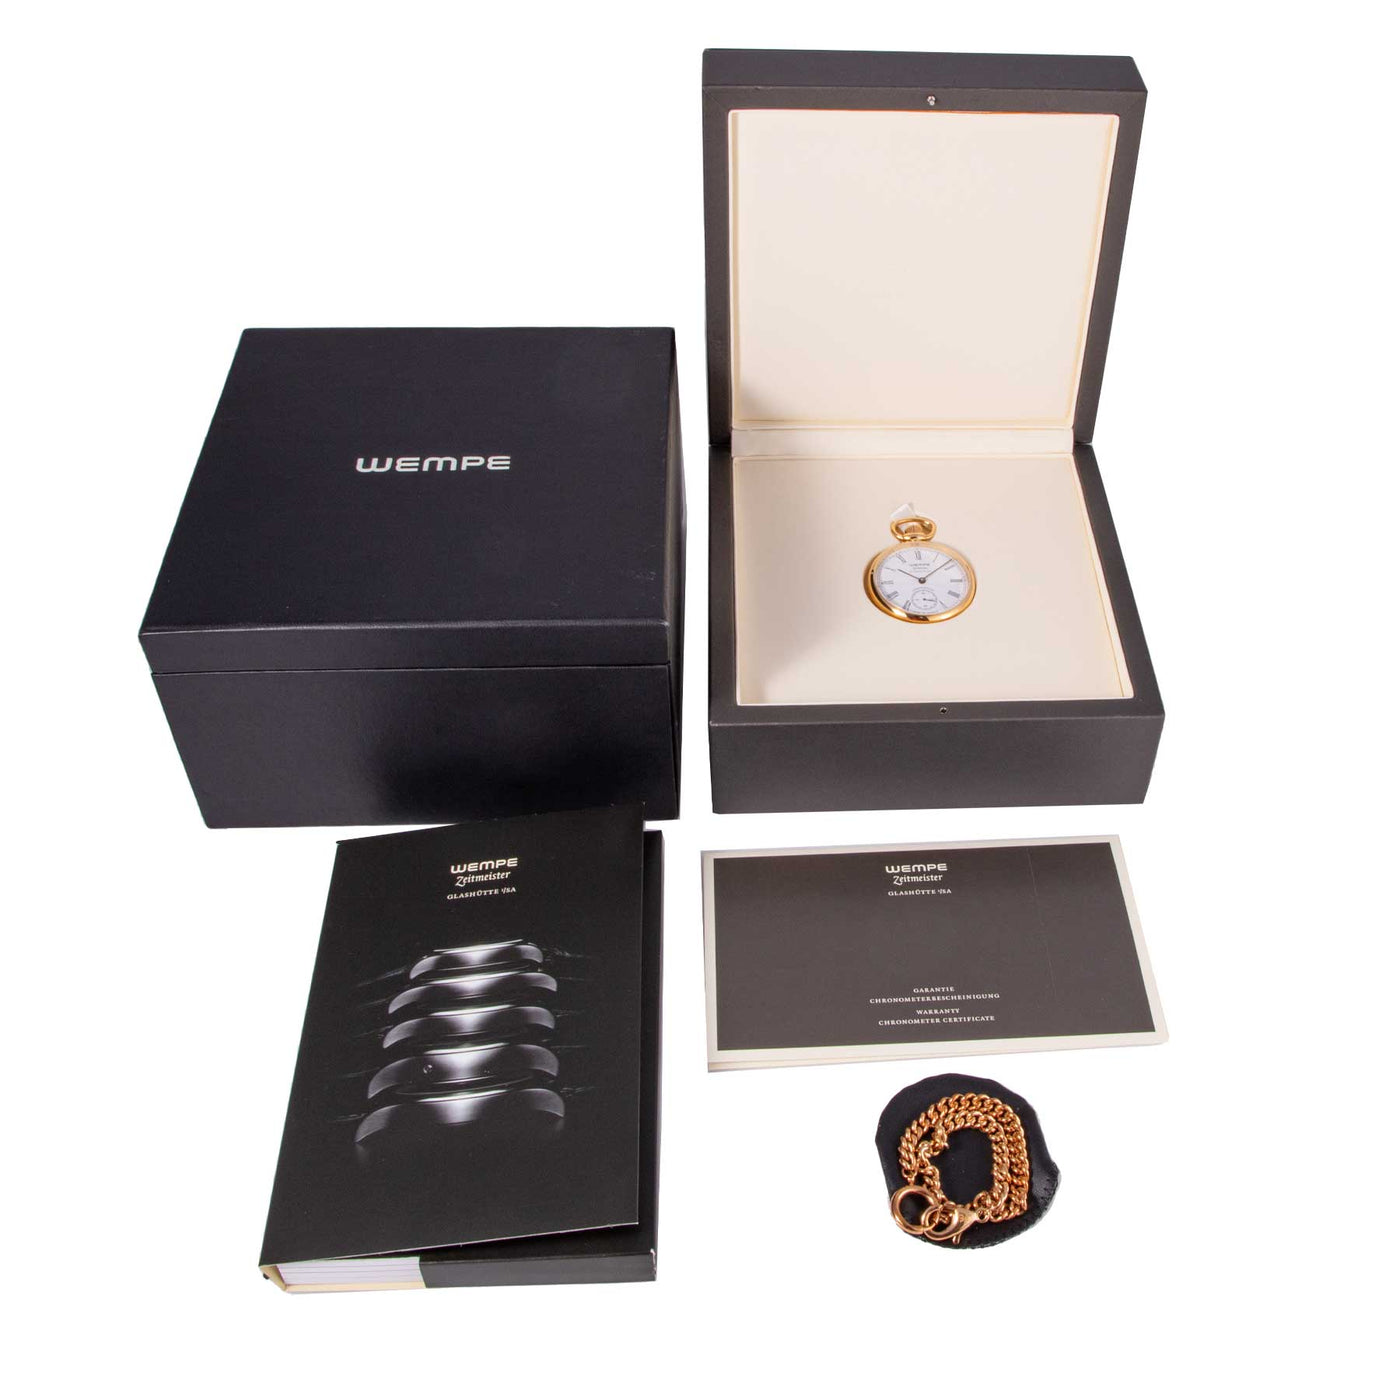 Wempe Zeitmeister Pocket Lepine WM70004 full set | Timepiece360